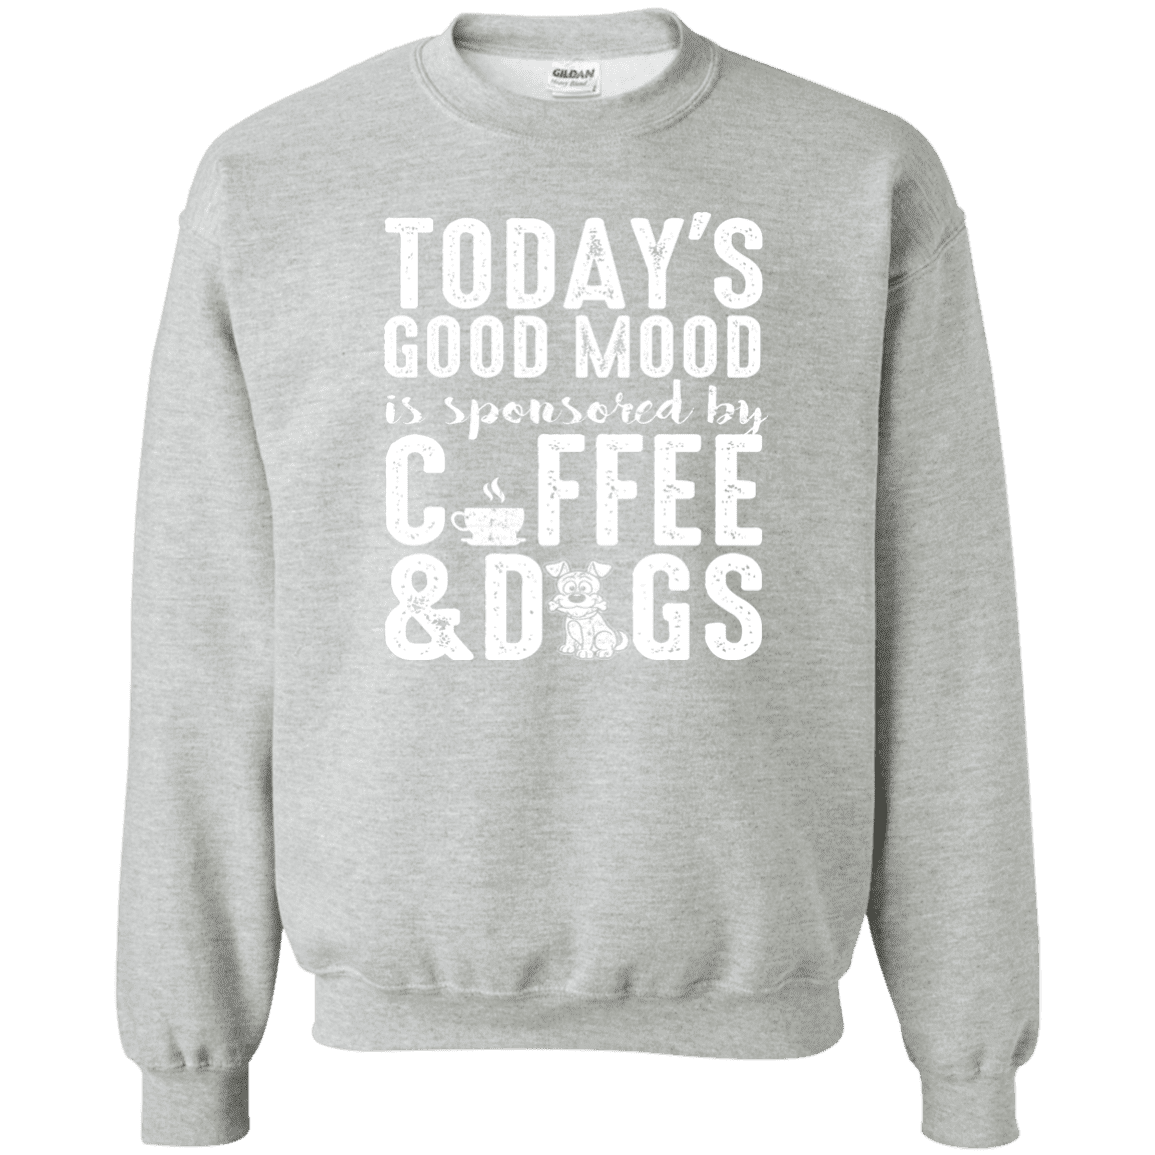 Today's Good Mood Coffee & Dogs- Sweatshirt.